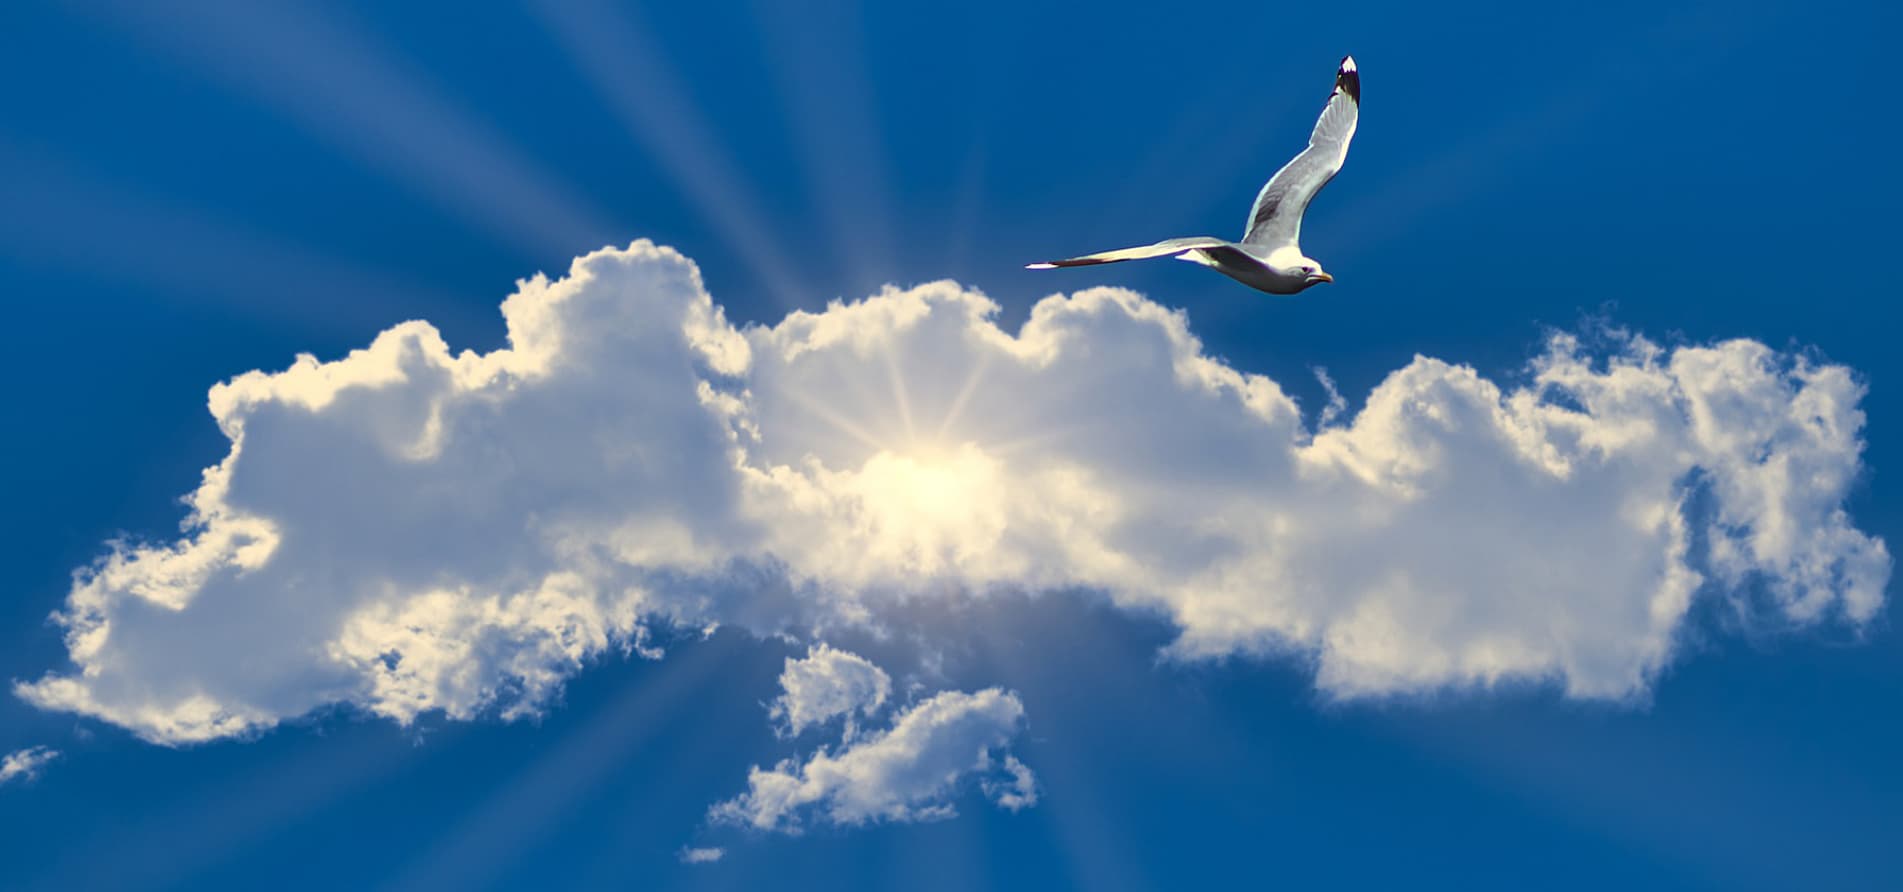 Sonne-Wolken-Mix mit blauem Himmel und fliegender Moewe verdeutlichen die Klimafreundlichkeit einer industriellen Lüftunganlage, die professionell geplant und budgetiert wurde.